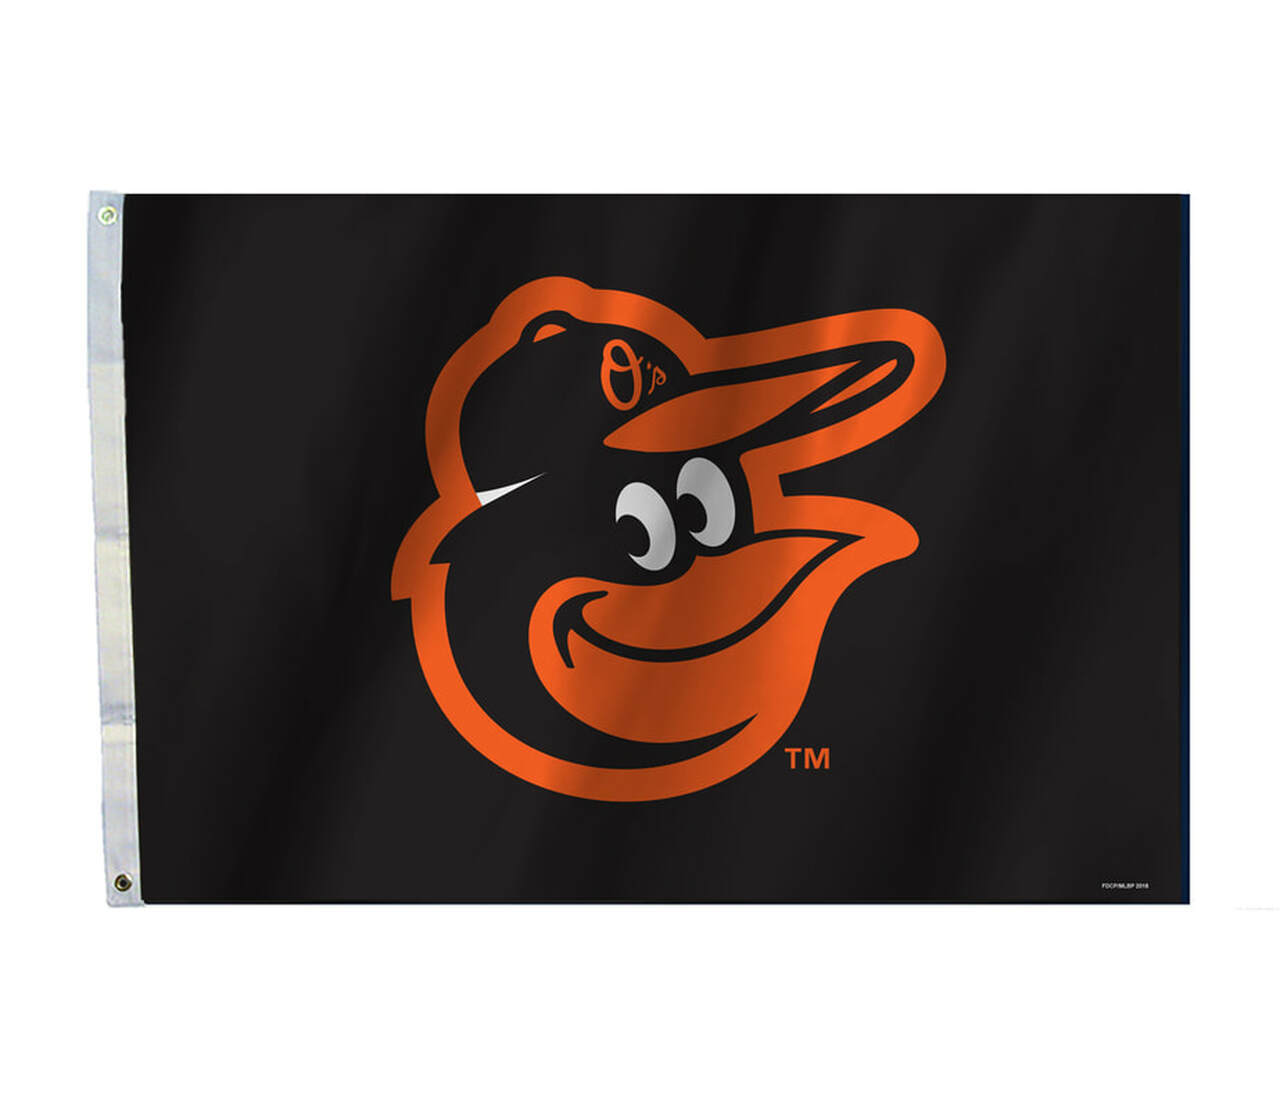 Baltimore Orioles Flag 2x3 CO